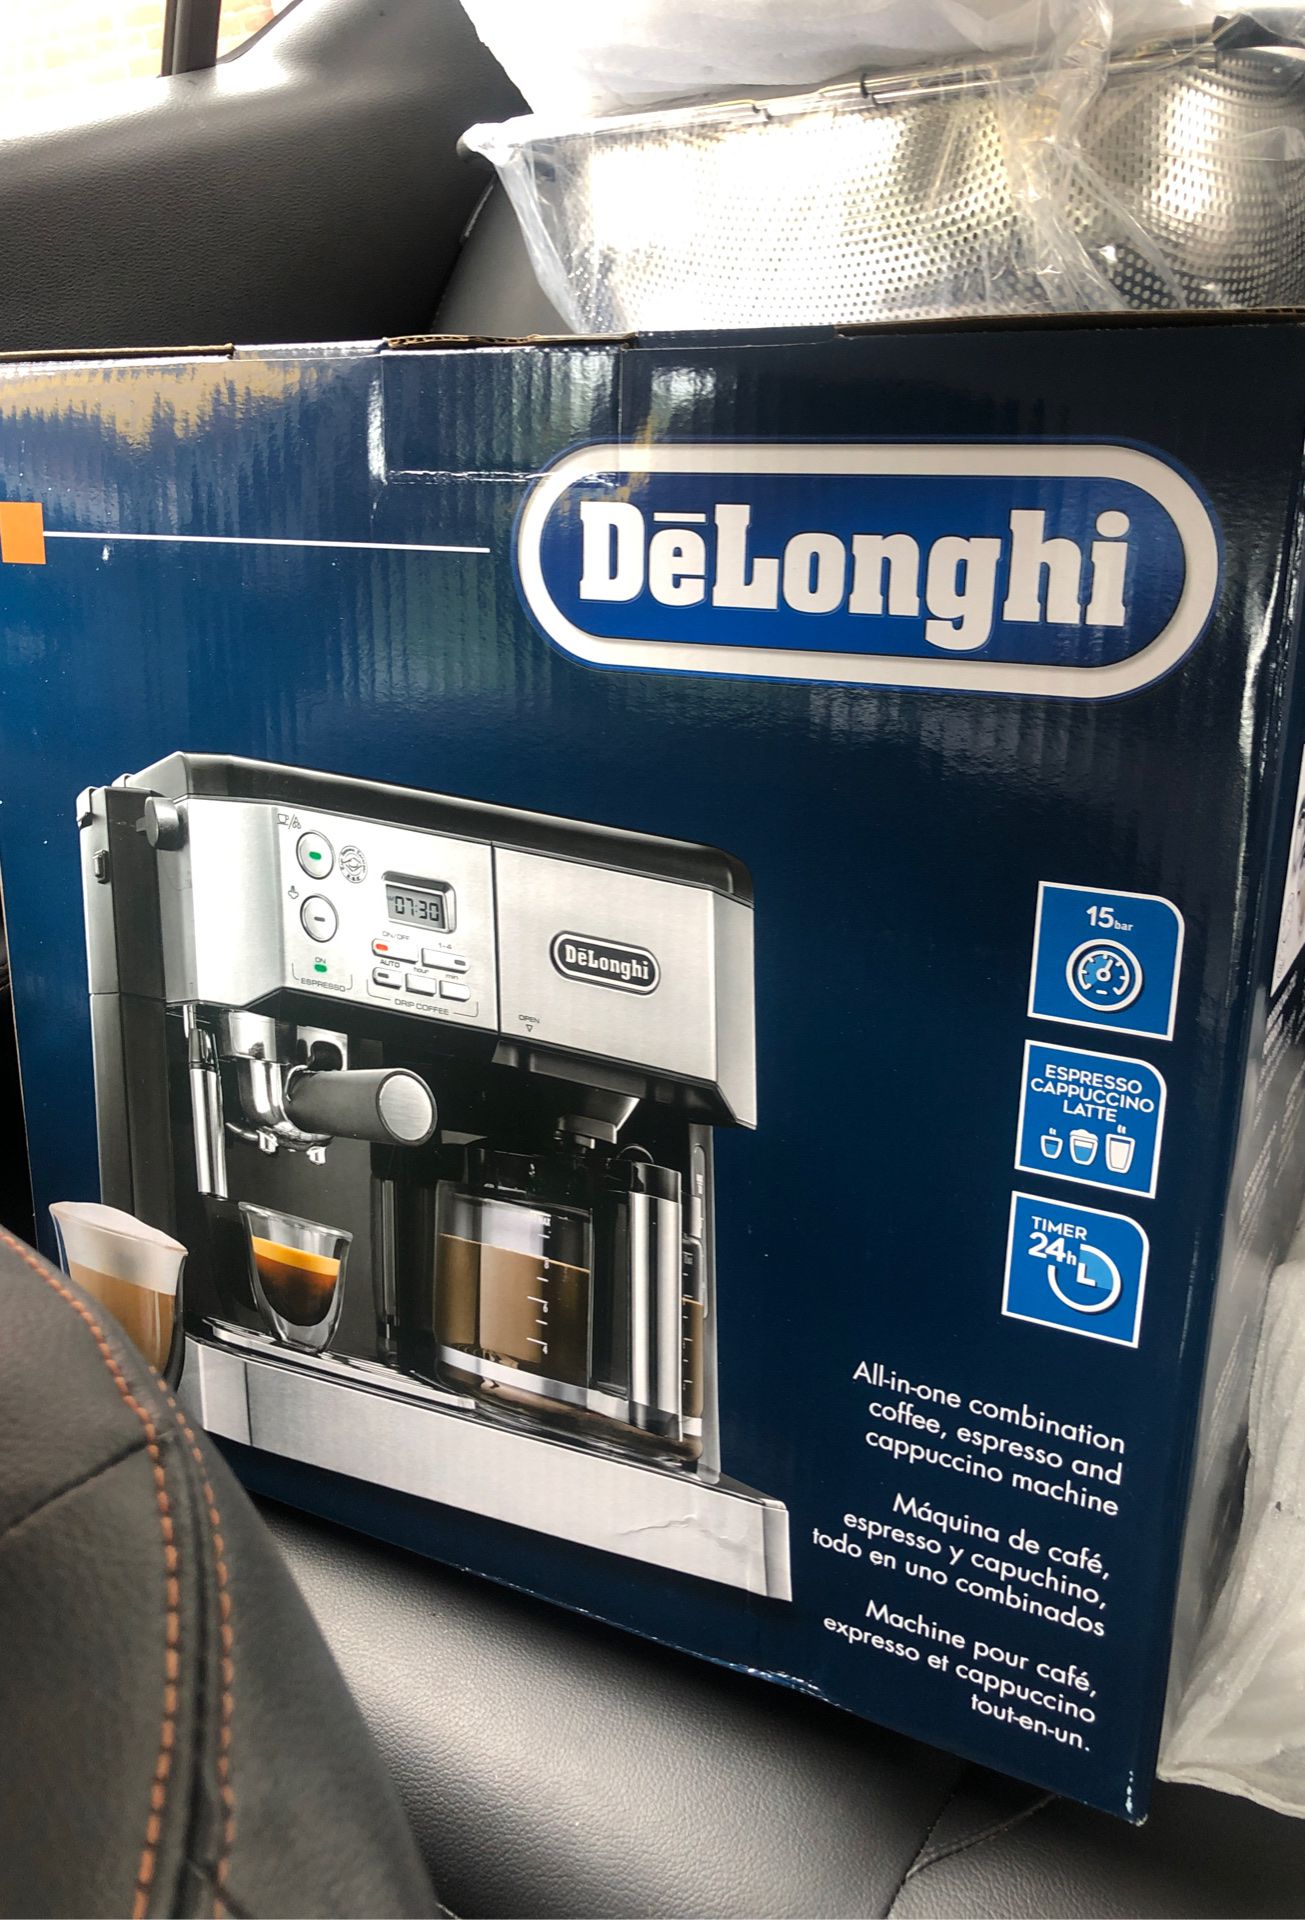 NEW DeLonghi All-in-one Coffee/Espresso Machine